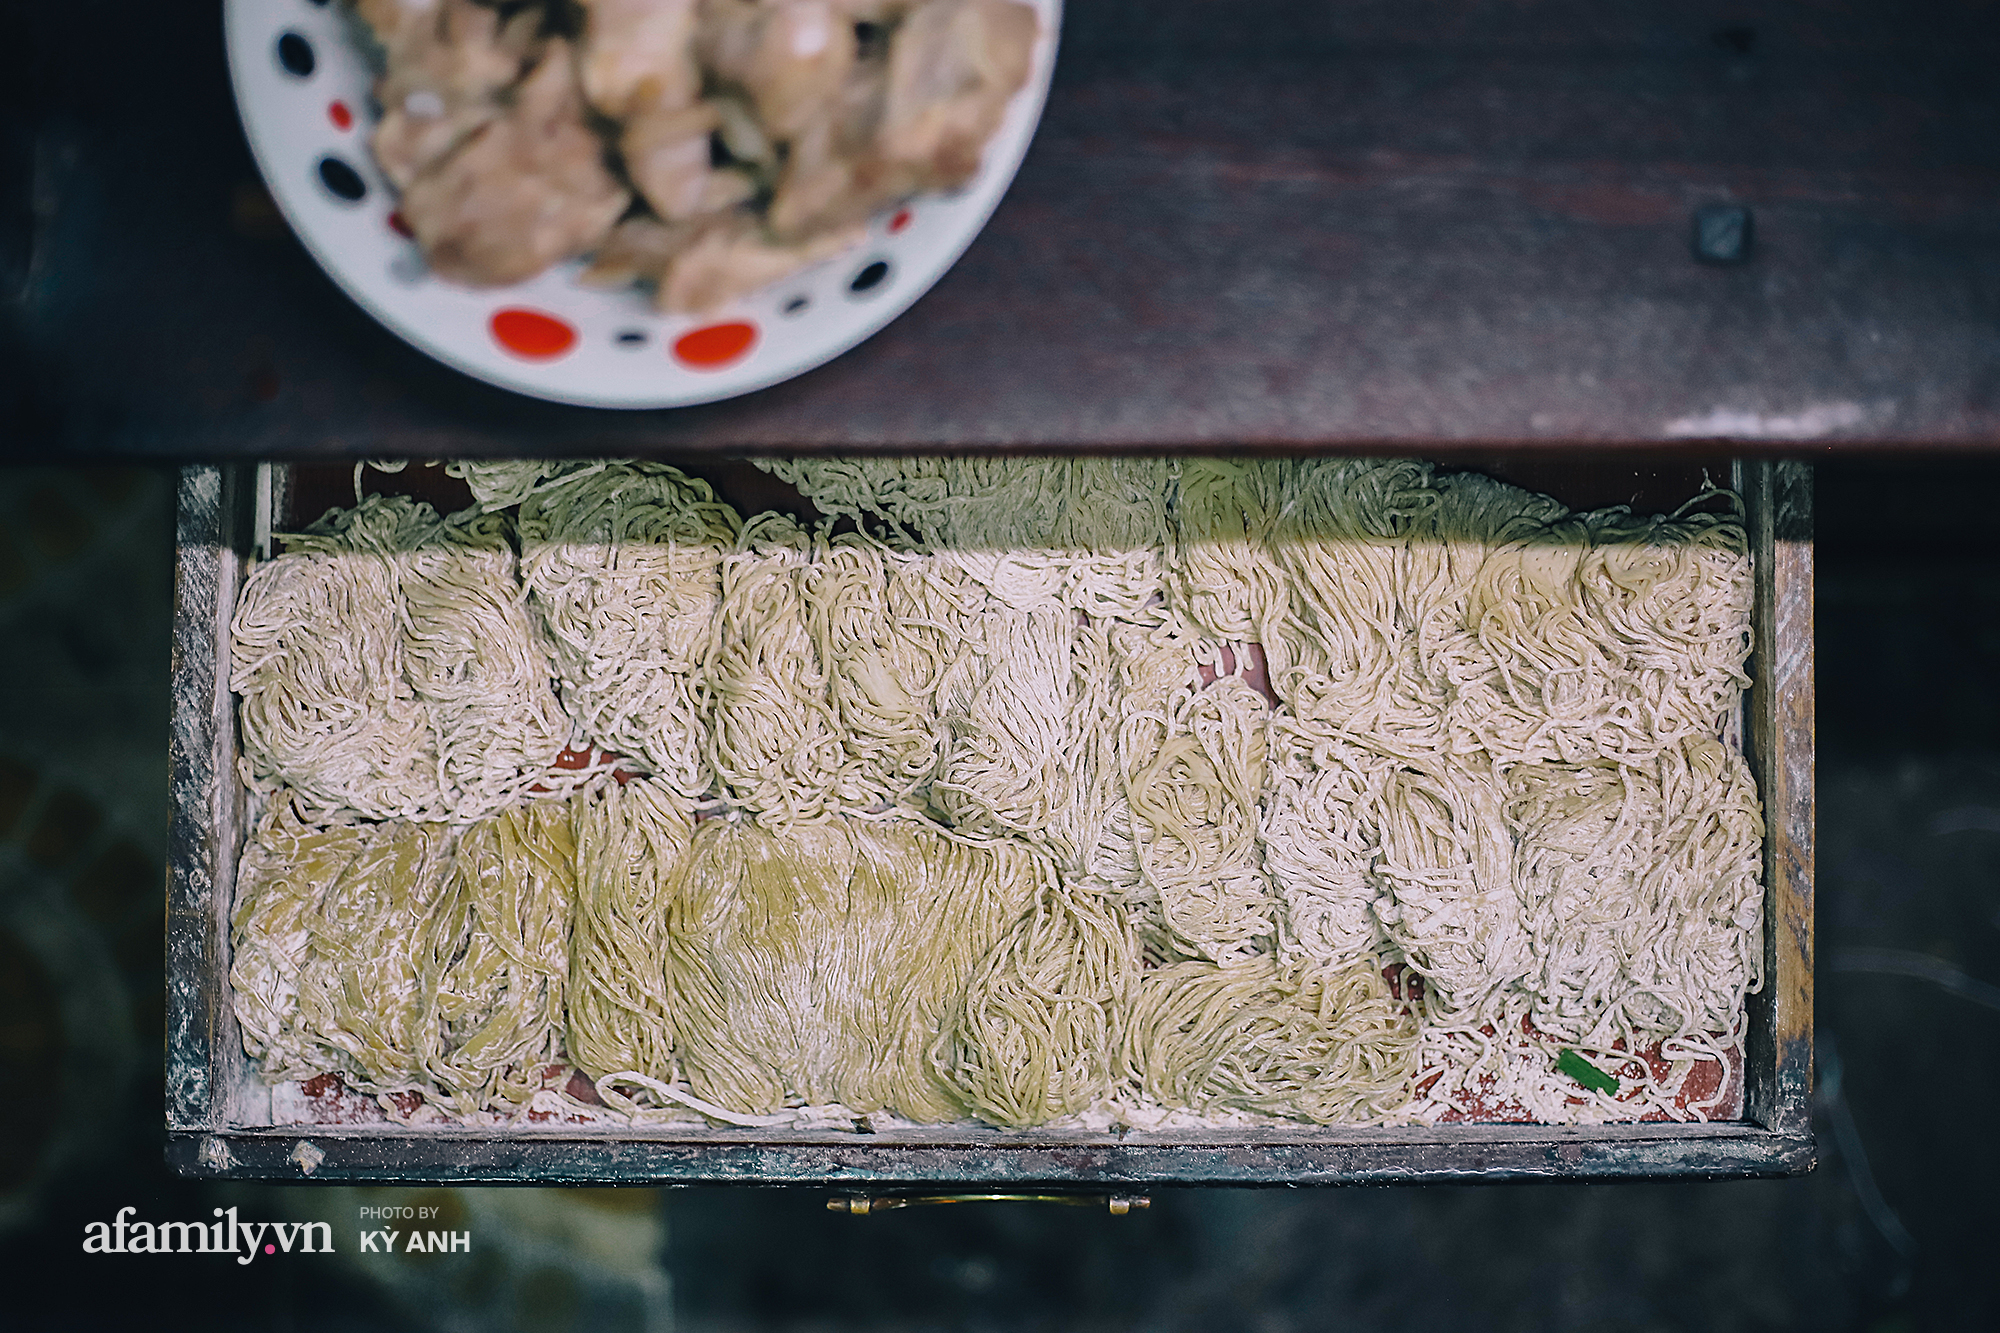 Tiệm mì 60 năm không ngủ của 3 thế hệ người Hoa ở Sài Gòn, mỗi đêm bán 600 vắt mì, 6kg hoành thánh, khách ra vào liên tục 3 người bán không xuể - Ảnh 3.